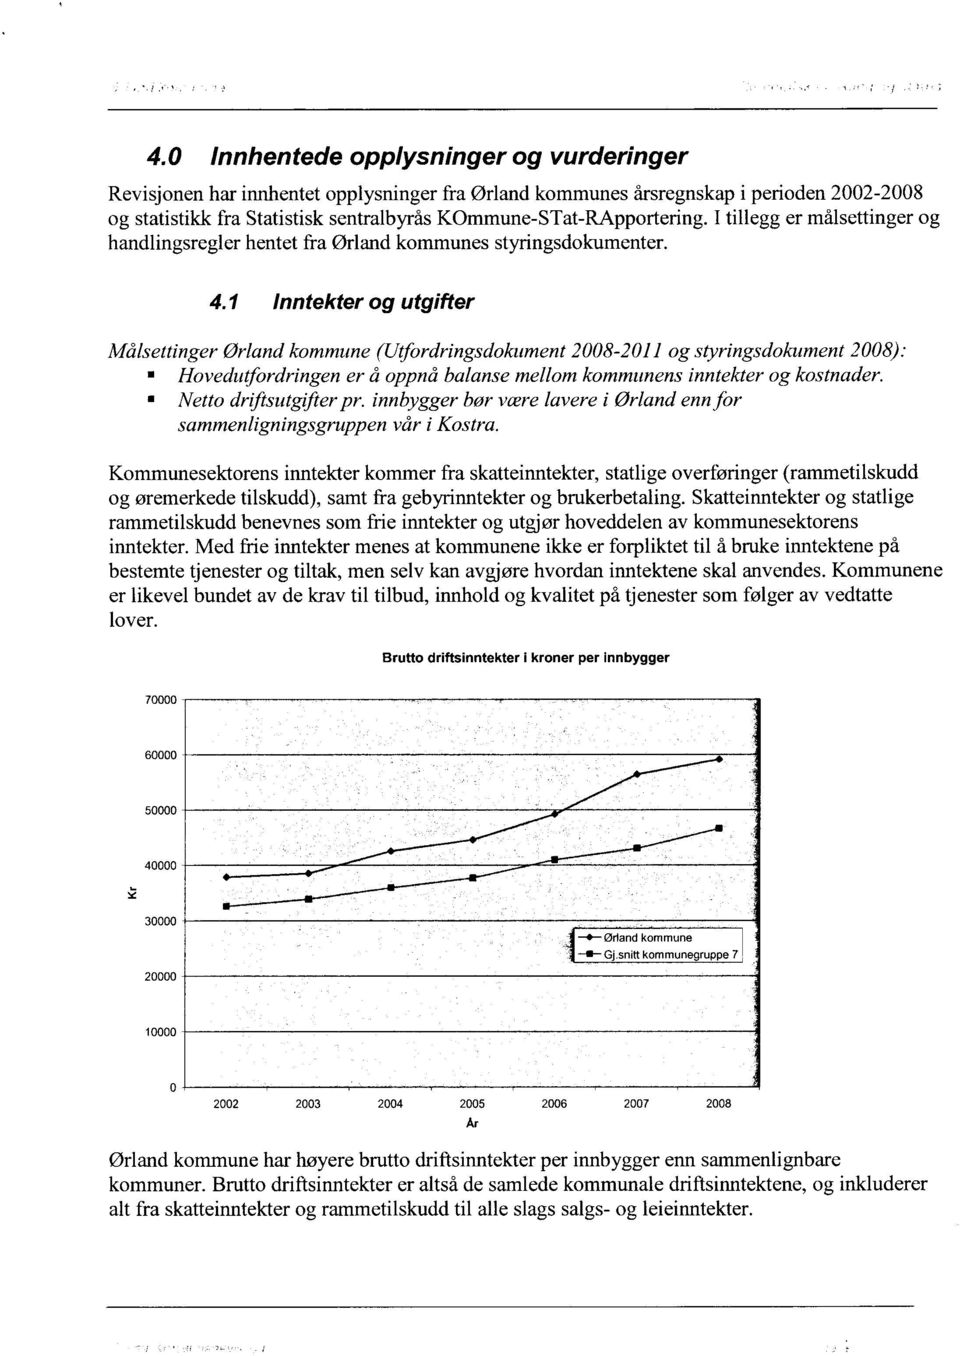 1 Inntekter og utgifter Målsettinger Ørland kommune (Utfordringsdokument 2008-2011 og styringsdokument 2008): Hovedutfordringen er å oppnå balanse mellom kommunens inntekter og kostnader.